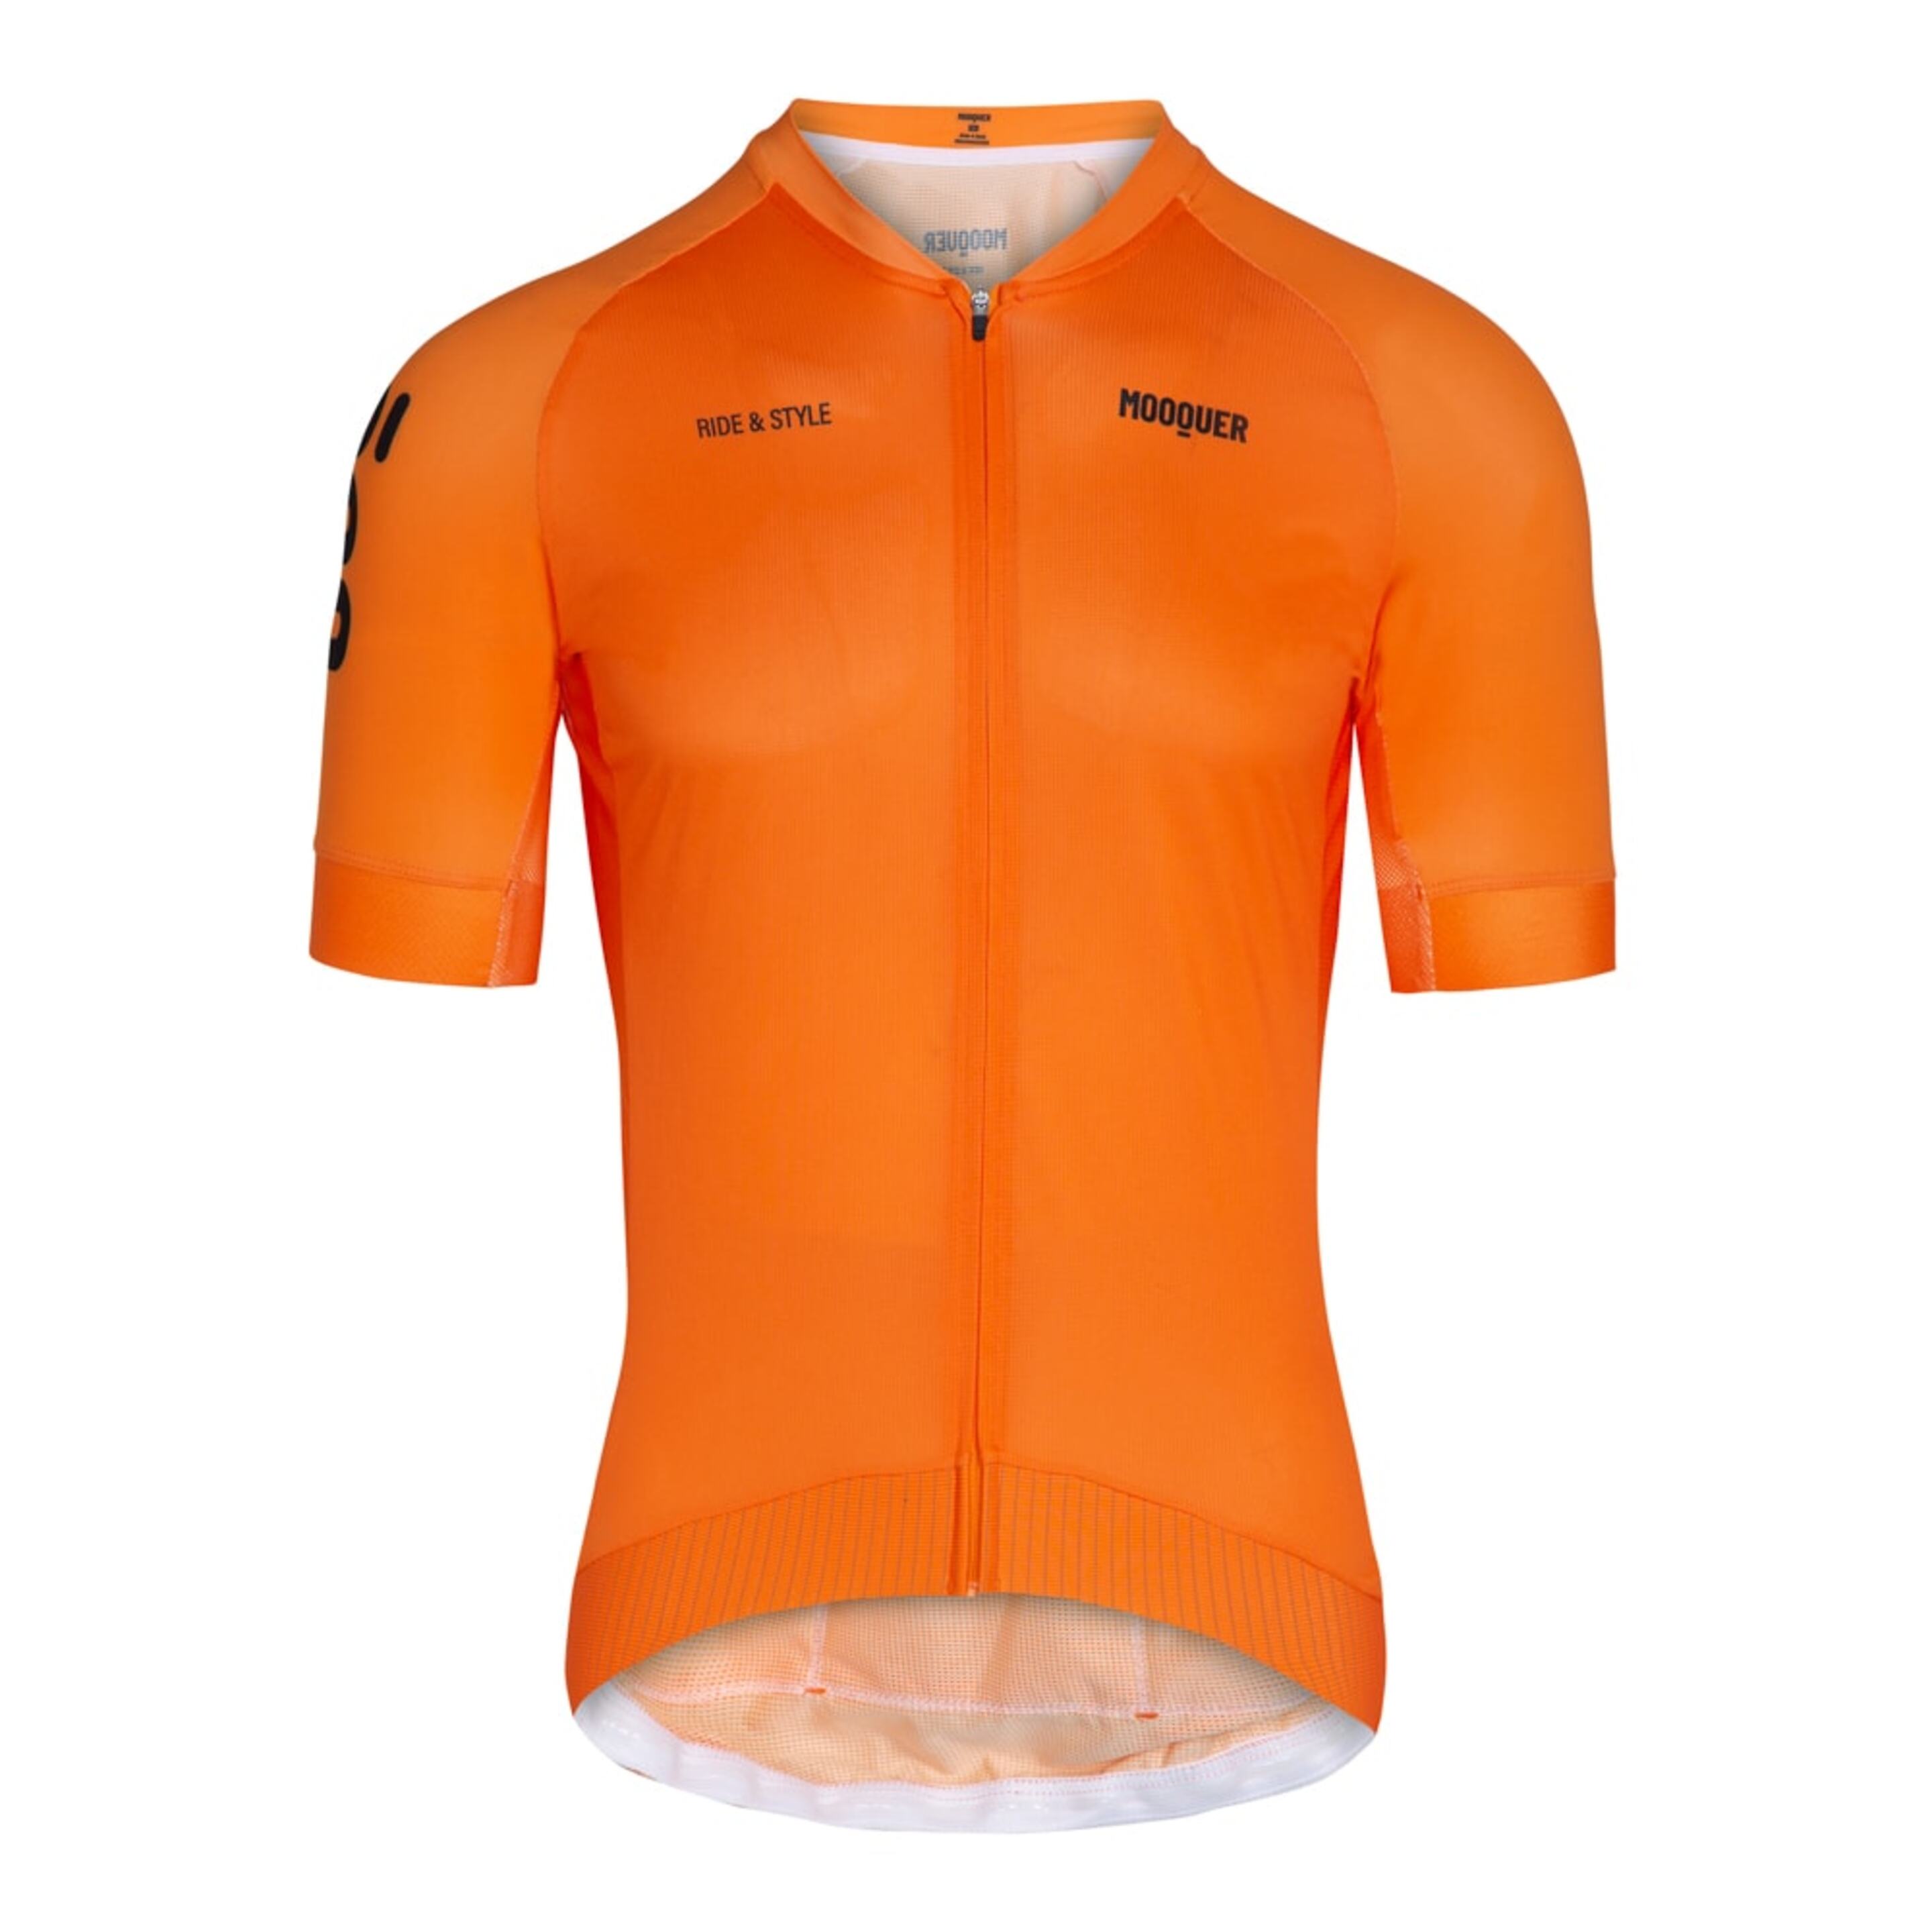 Maillot Ciclismo Mooquer Magma Aero - naranja - 